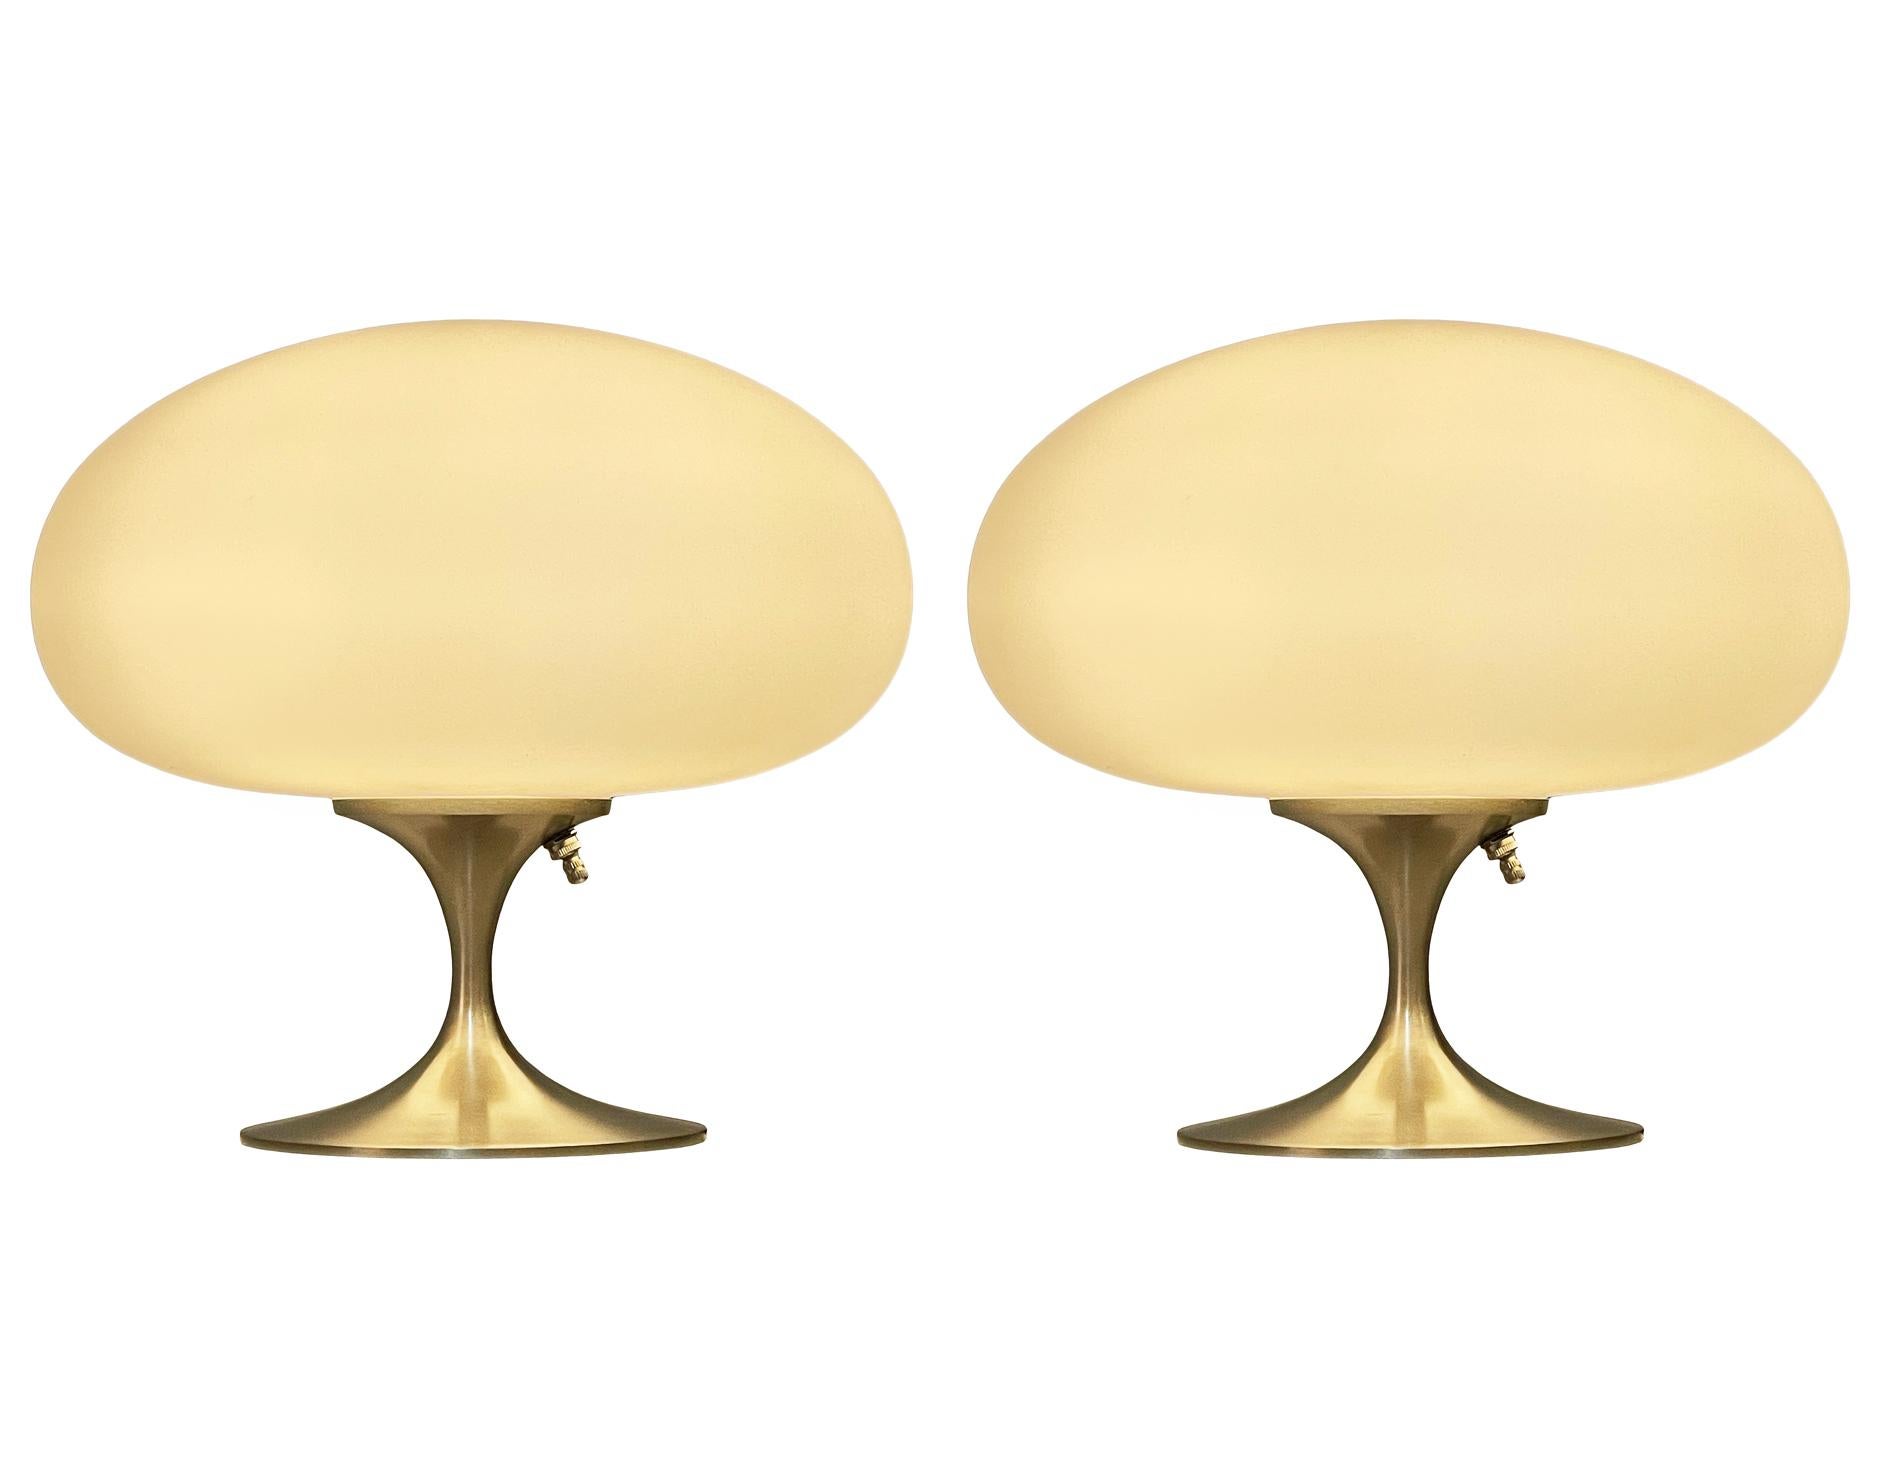 Une magnifique paire de lampes de table en forme de tulipe de la marque Laurel Lamp Company. Ces lampes ont des bases en aluminium nickelé et des abat-jour en verre blanc dépoli soufflé à la bouche. Le prix comprend la paire telle qu'illustrée.